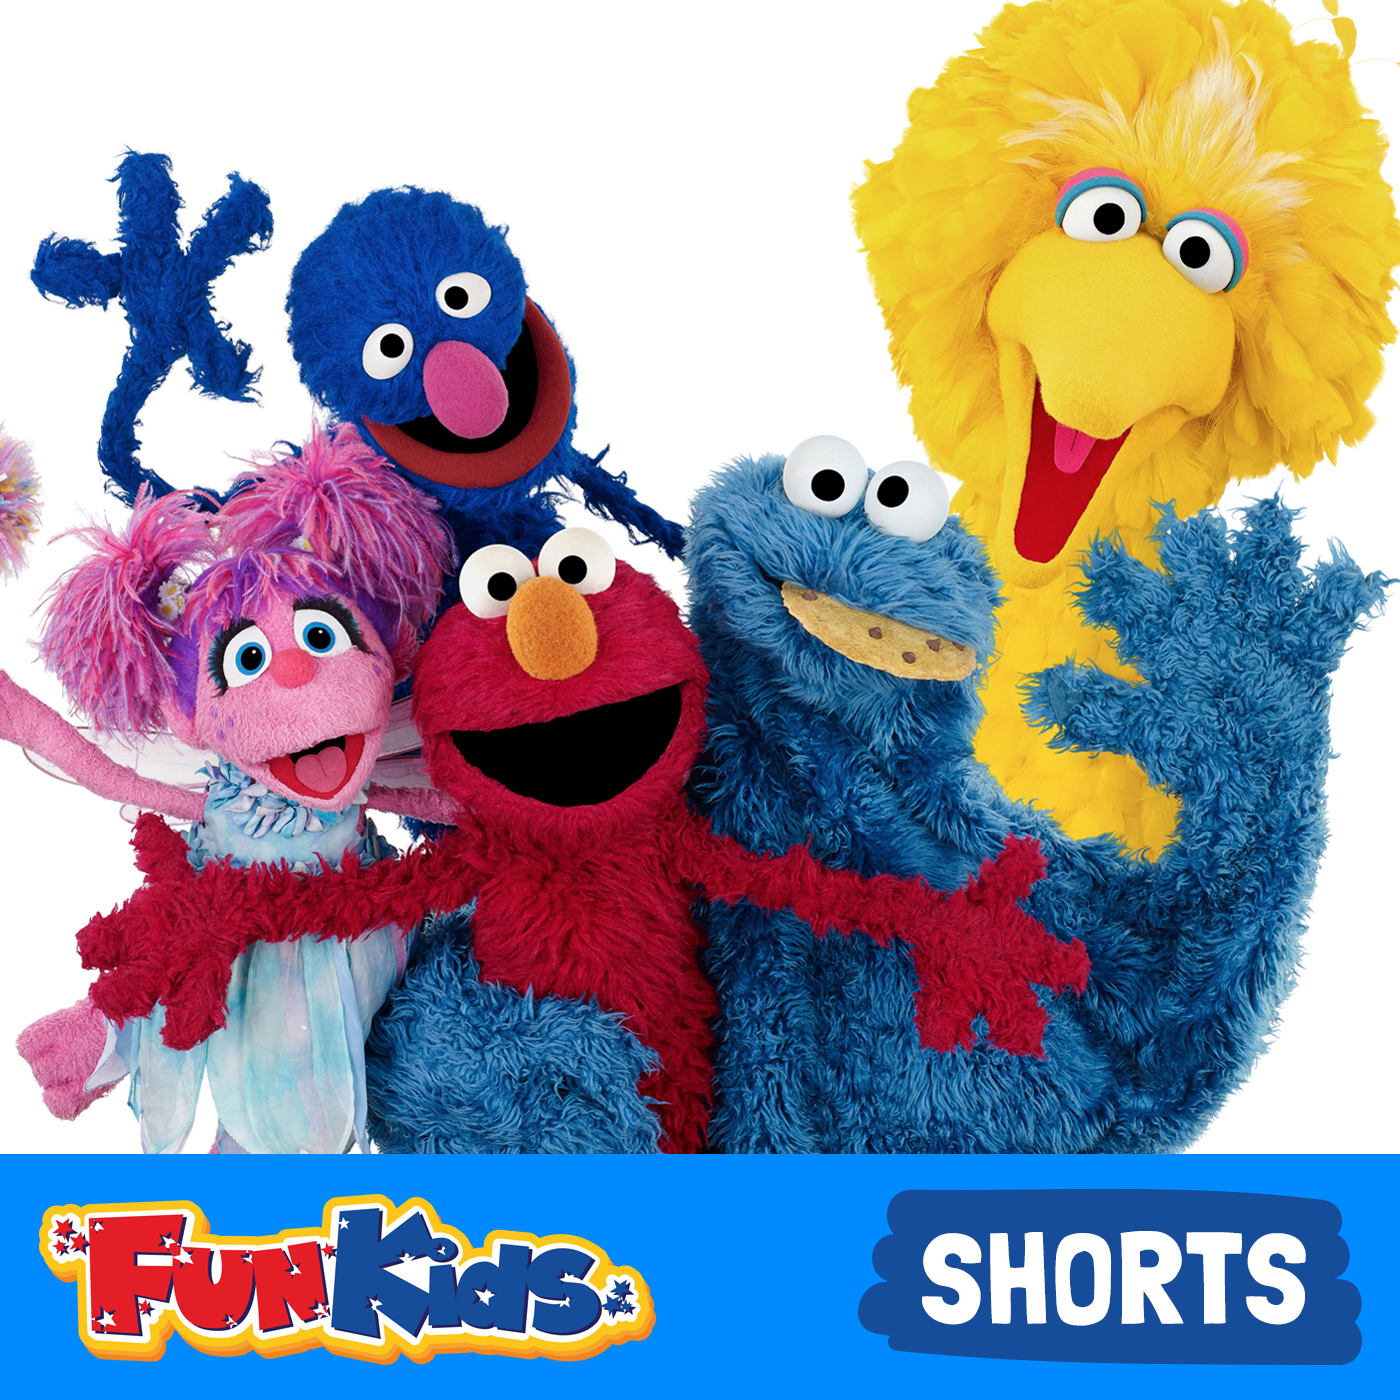 Elmo, Grover and Abby Cadabby on Fun Kids